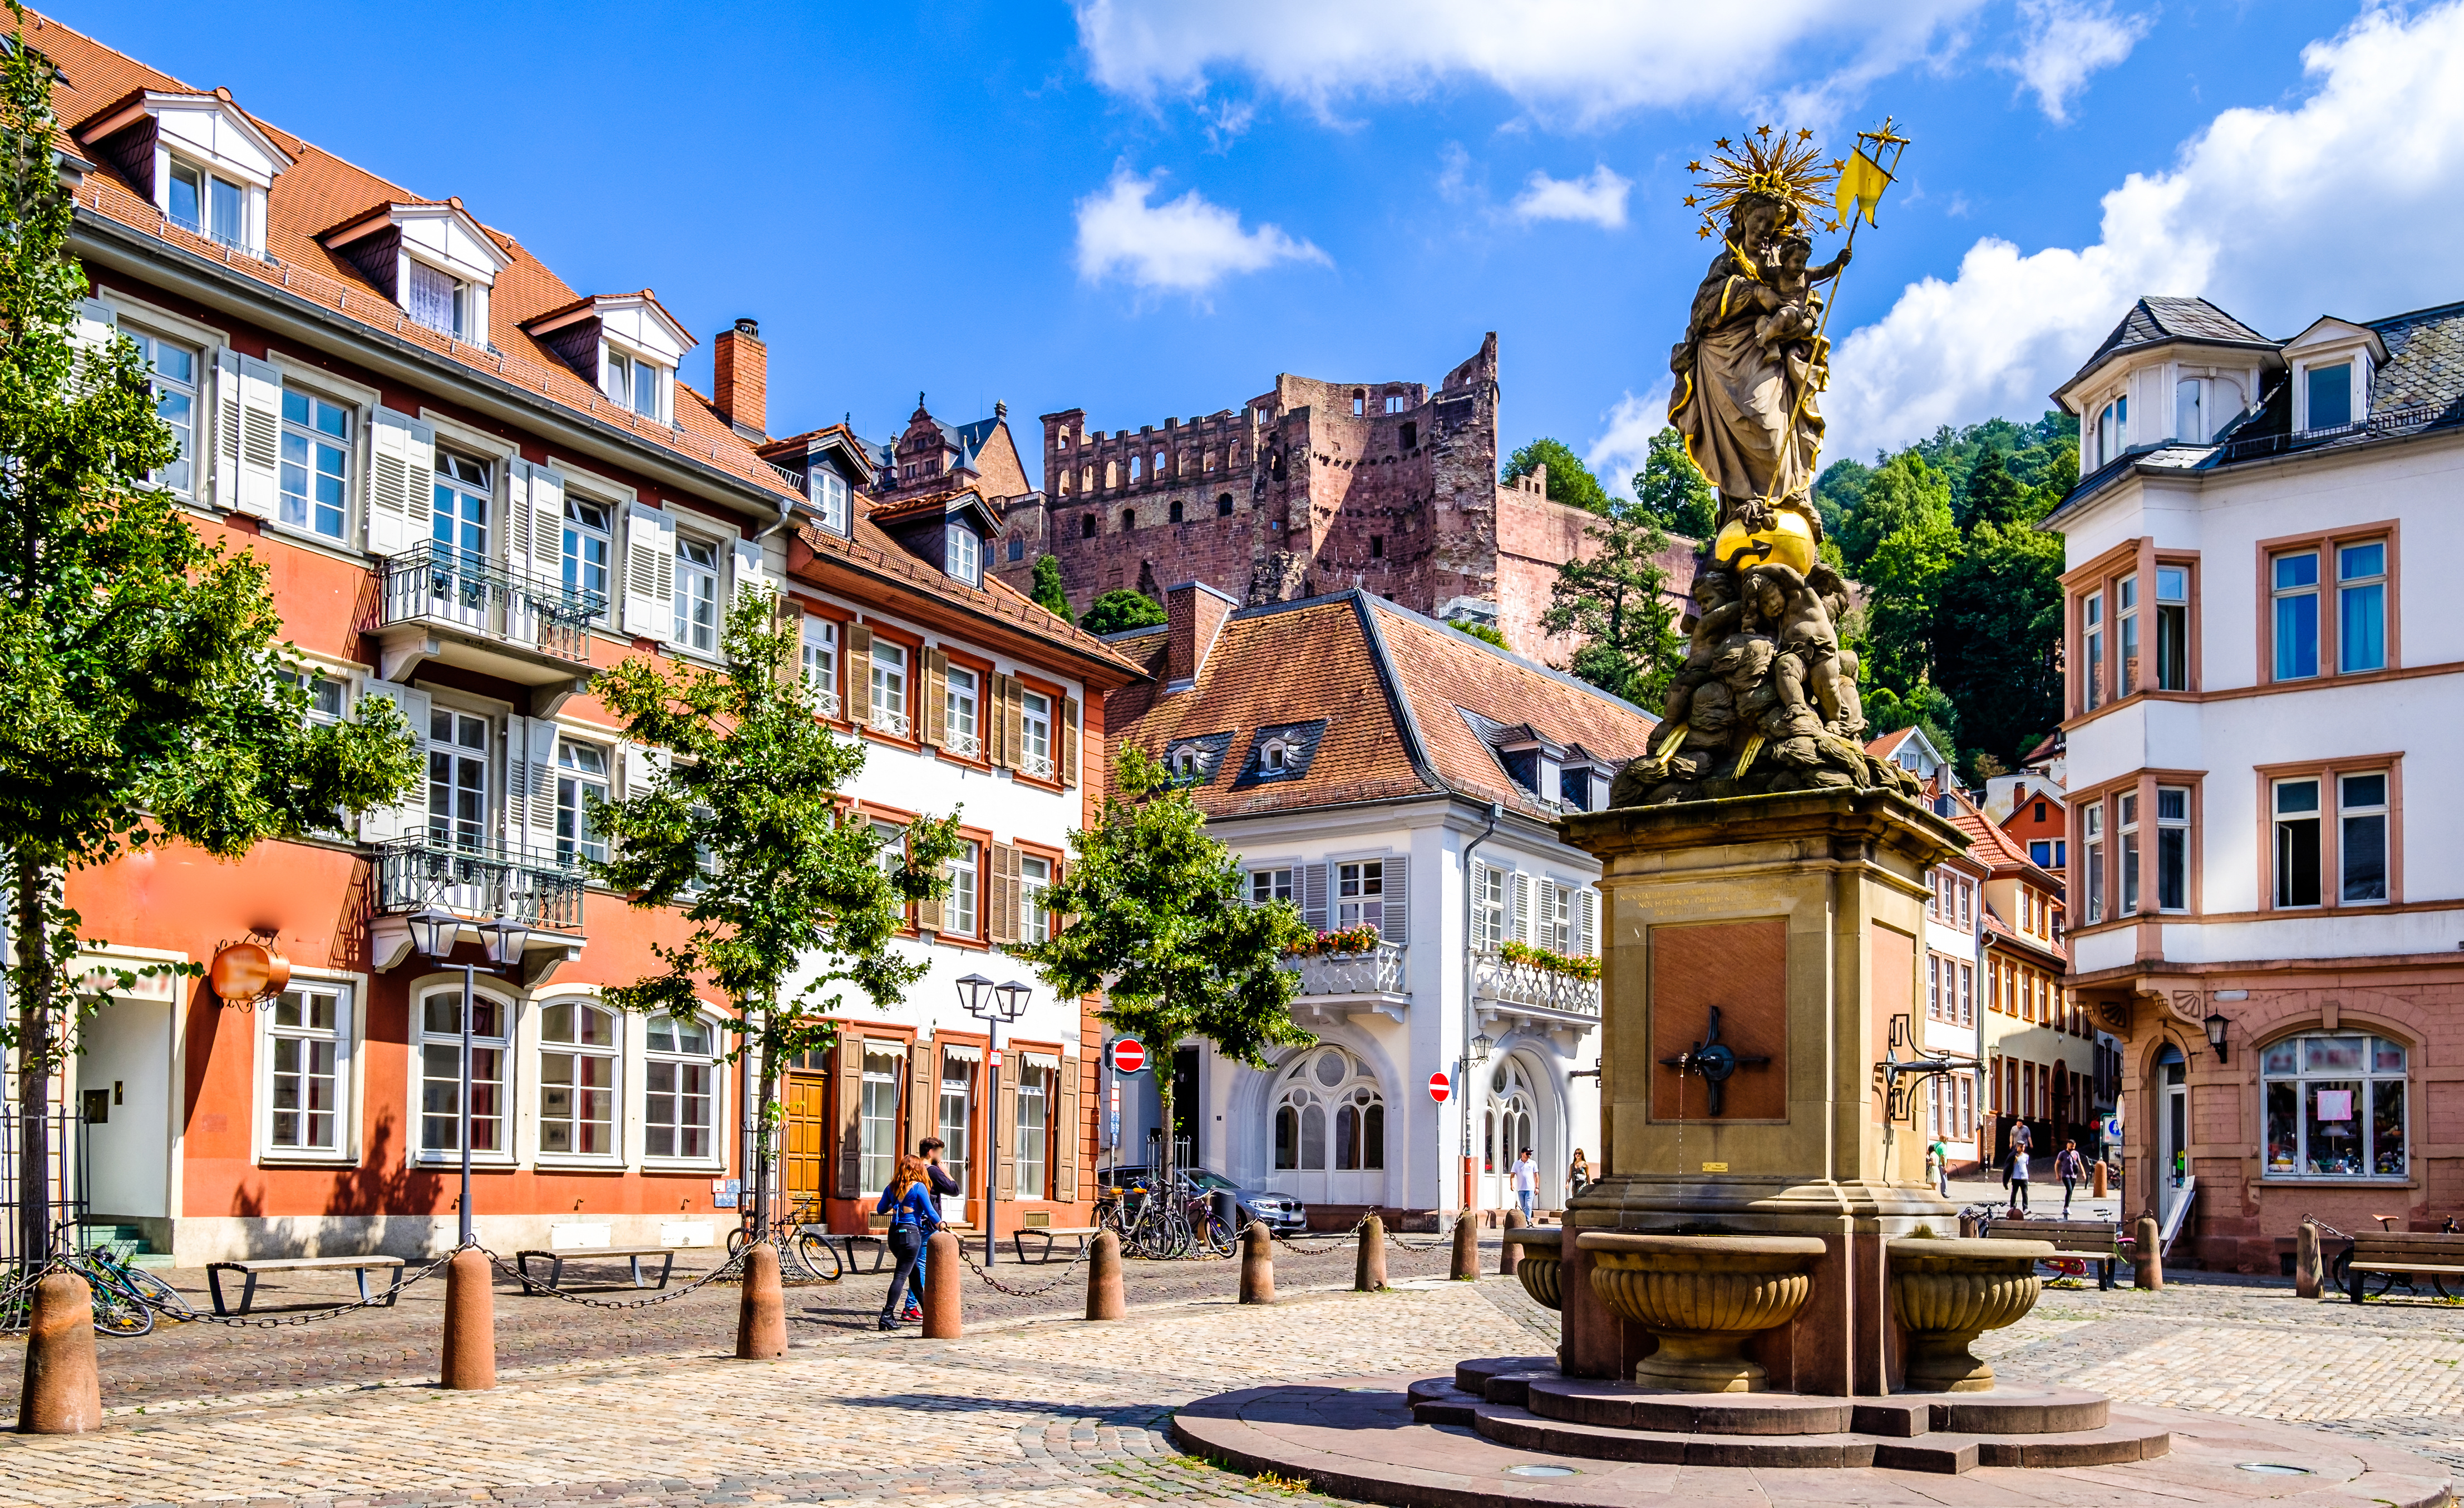 Immobilienmakler Krebs aus Heidelberg informiert über: Aufwärtstrend am Immobilienmarkt in Heidelberg- Warum sich investieren nach wie vor lohnt